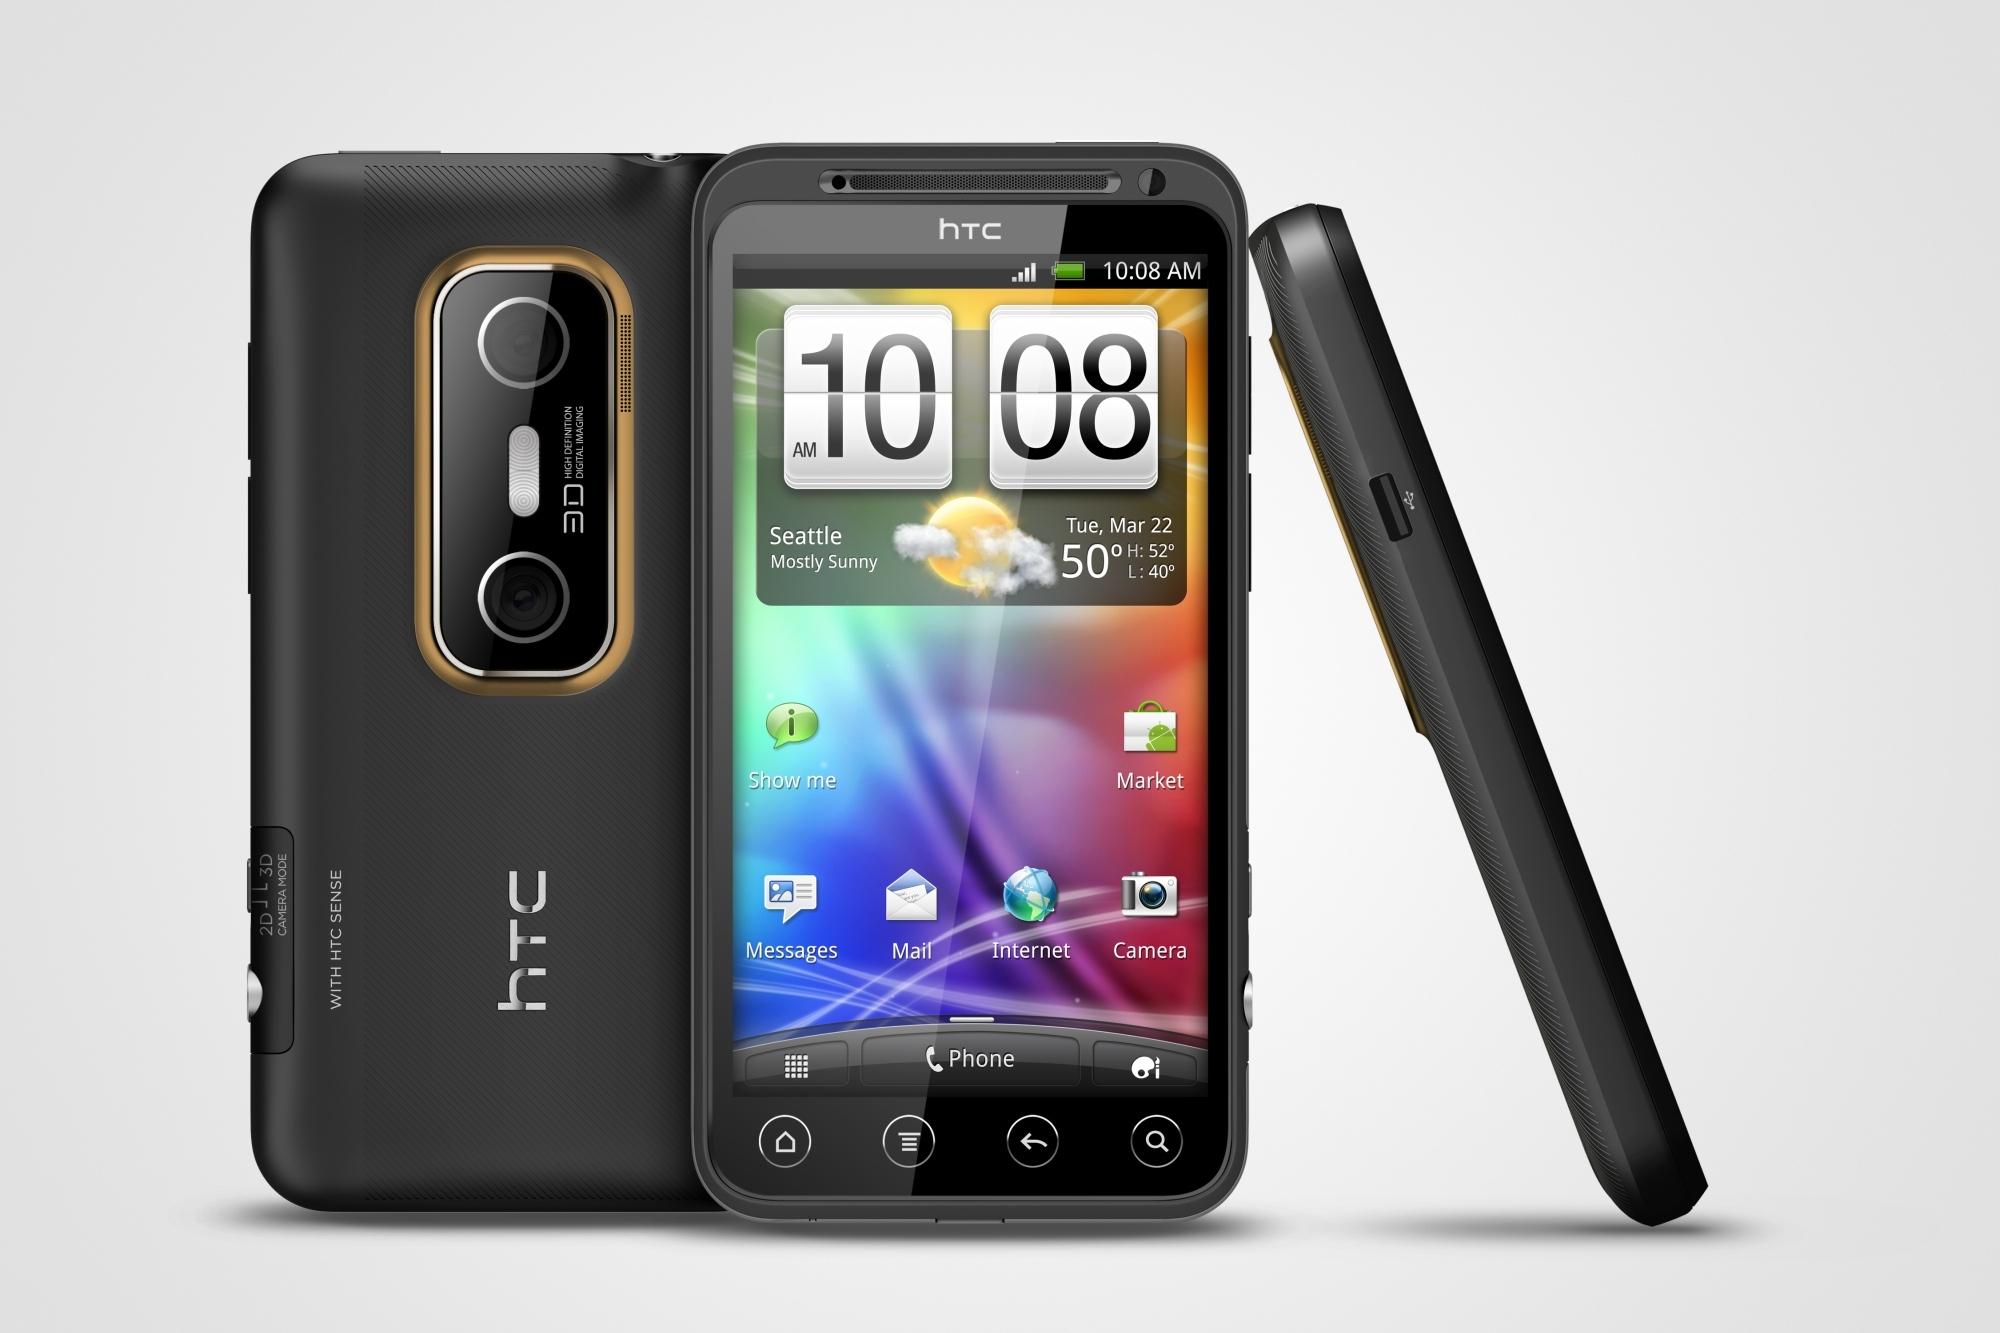 HTC Evo 3D var den andre av to samtidige telefoner med 3D-kamera og 3D-skjerm. Heller ikke den ble noen stor suksess, og siden har vi ikke sett noe til 3D-kamera på baksiden av mobiltelefoner.Foto: HTC